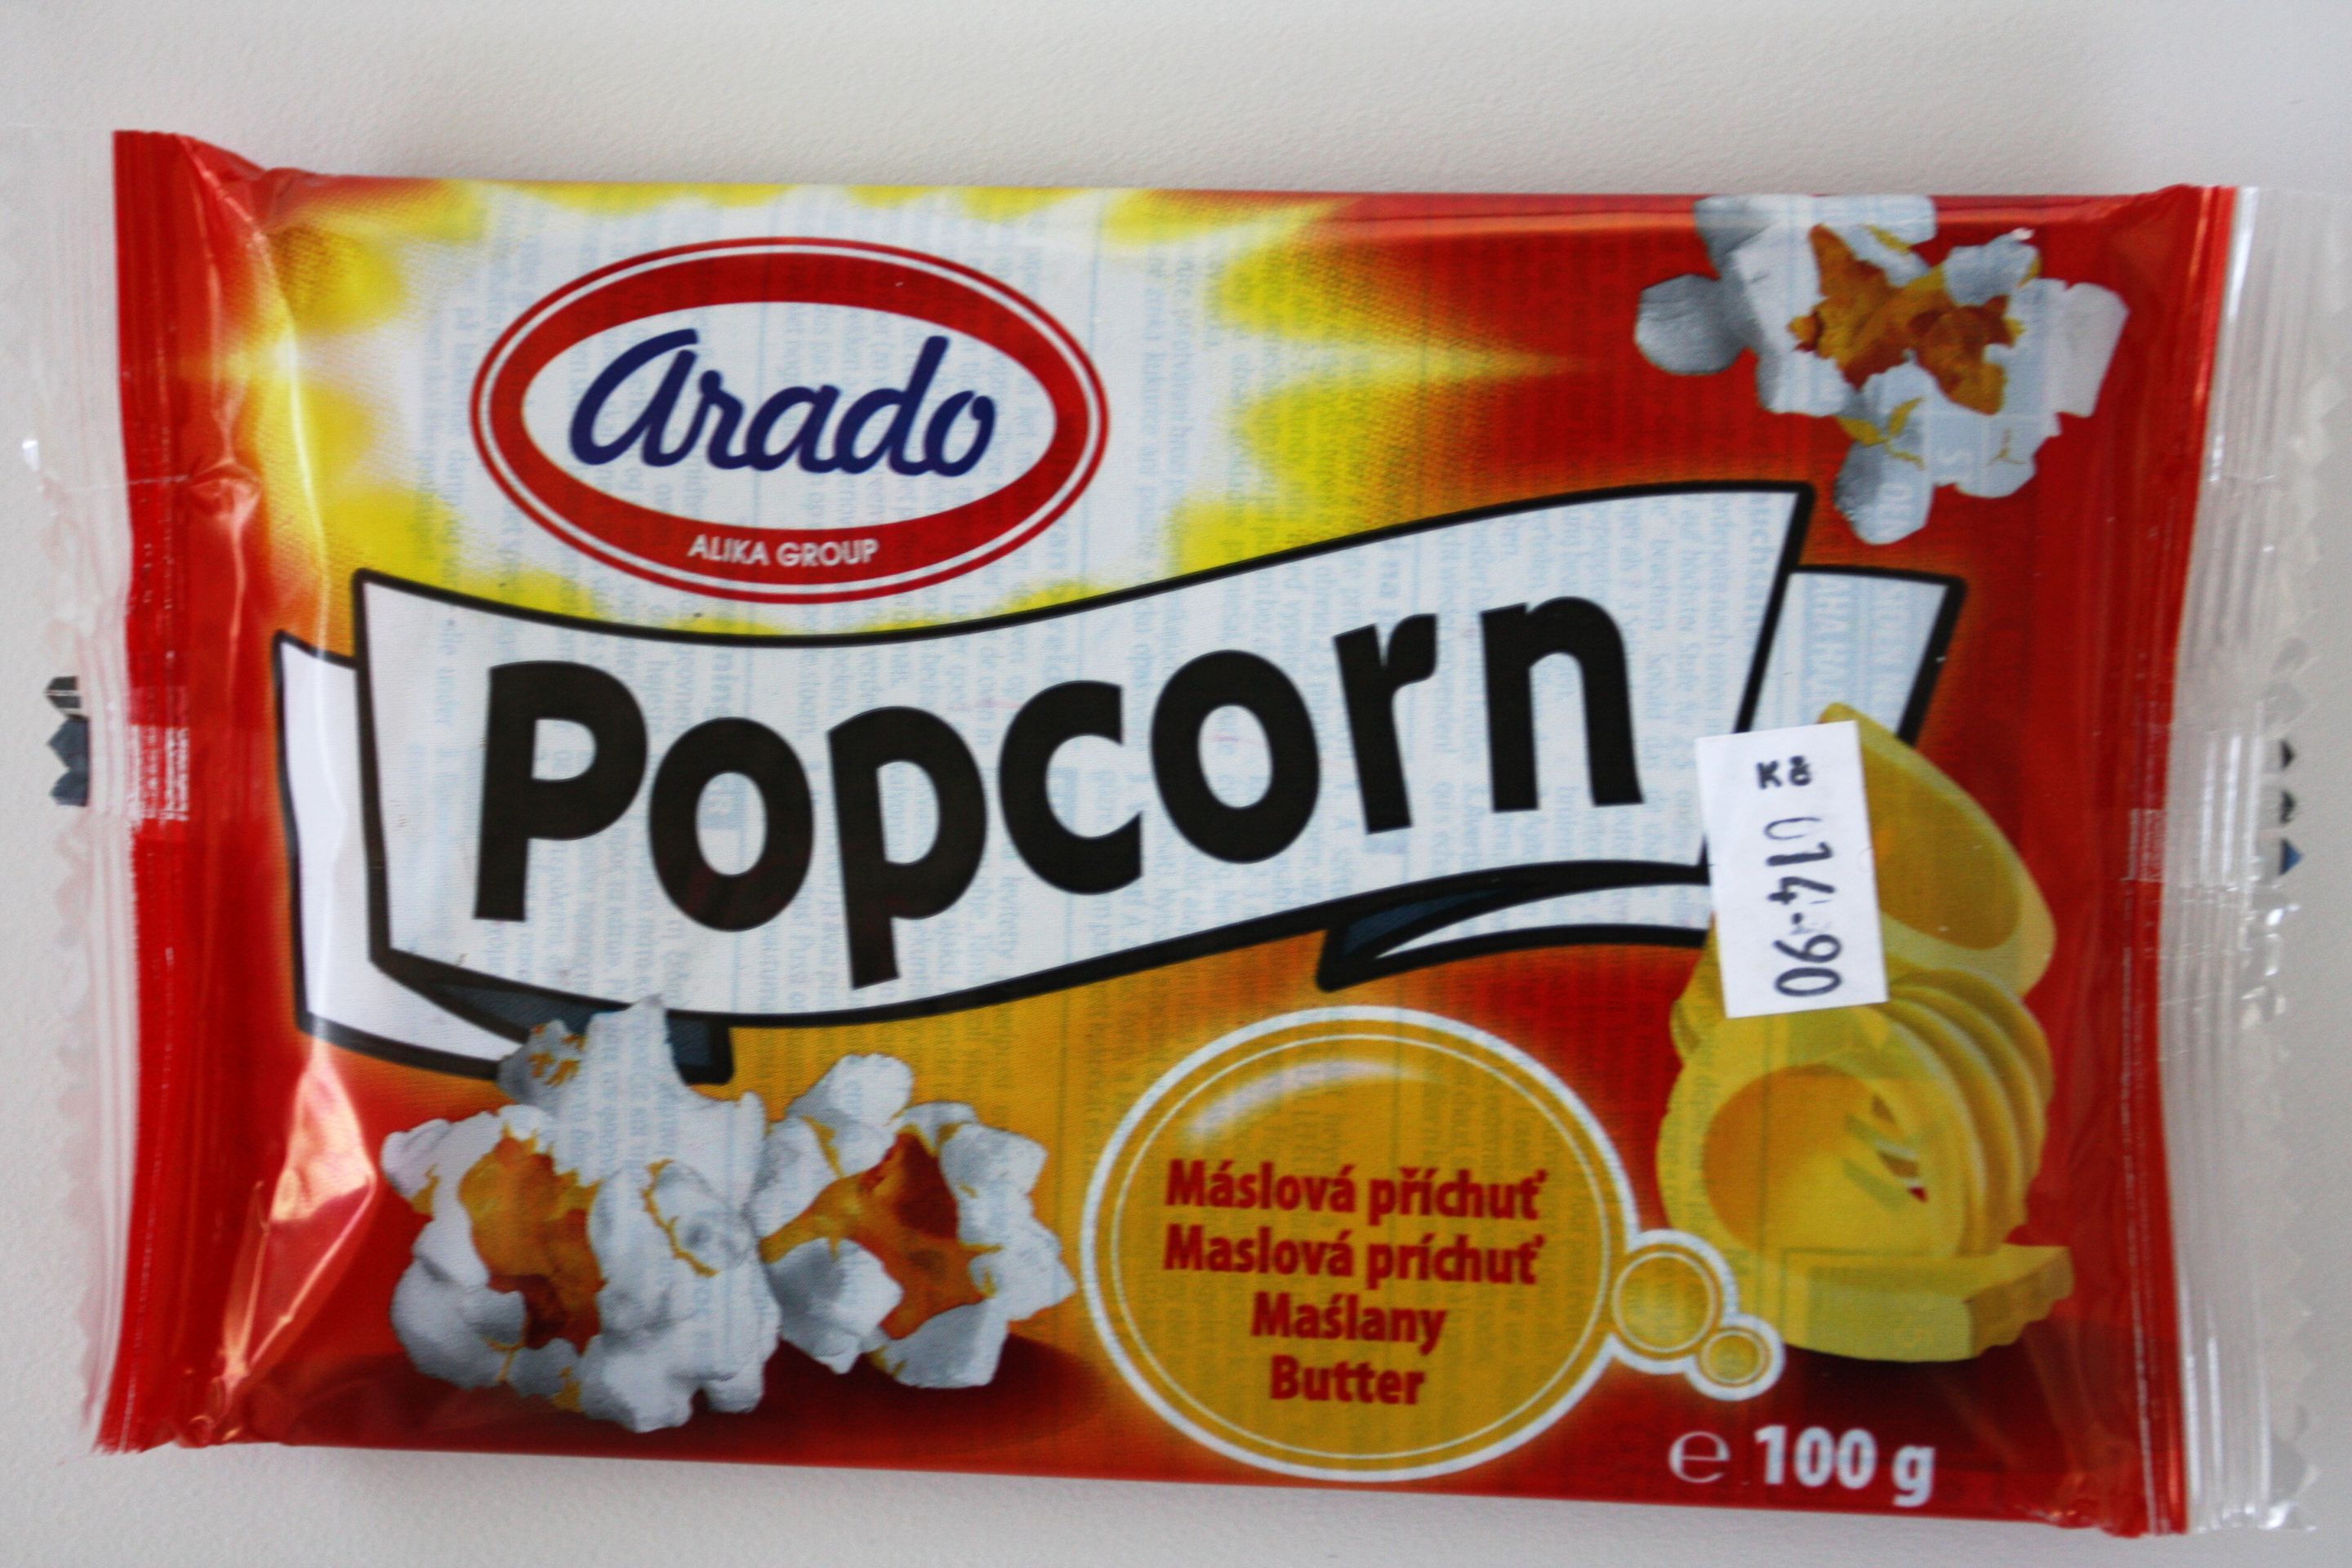 VÍTĚZ TESTU - 1. MÍSTO: Arado: Popcorn - máslová příchuť - GALERIE: Test popcornů s máslovou příchutí (1/16)